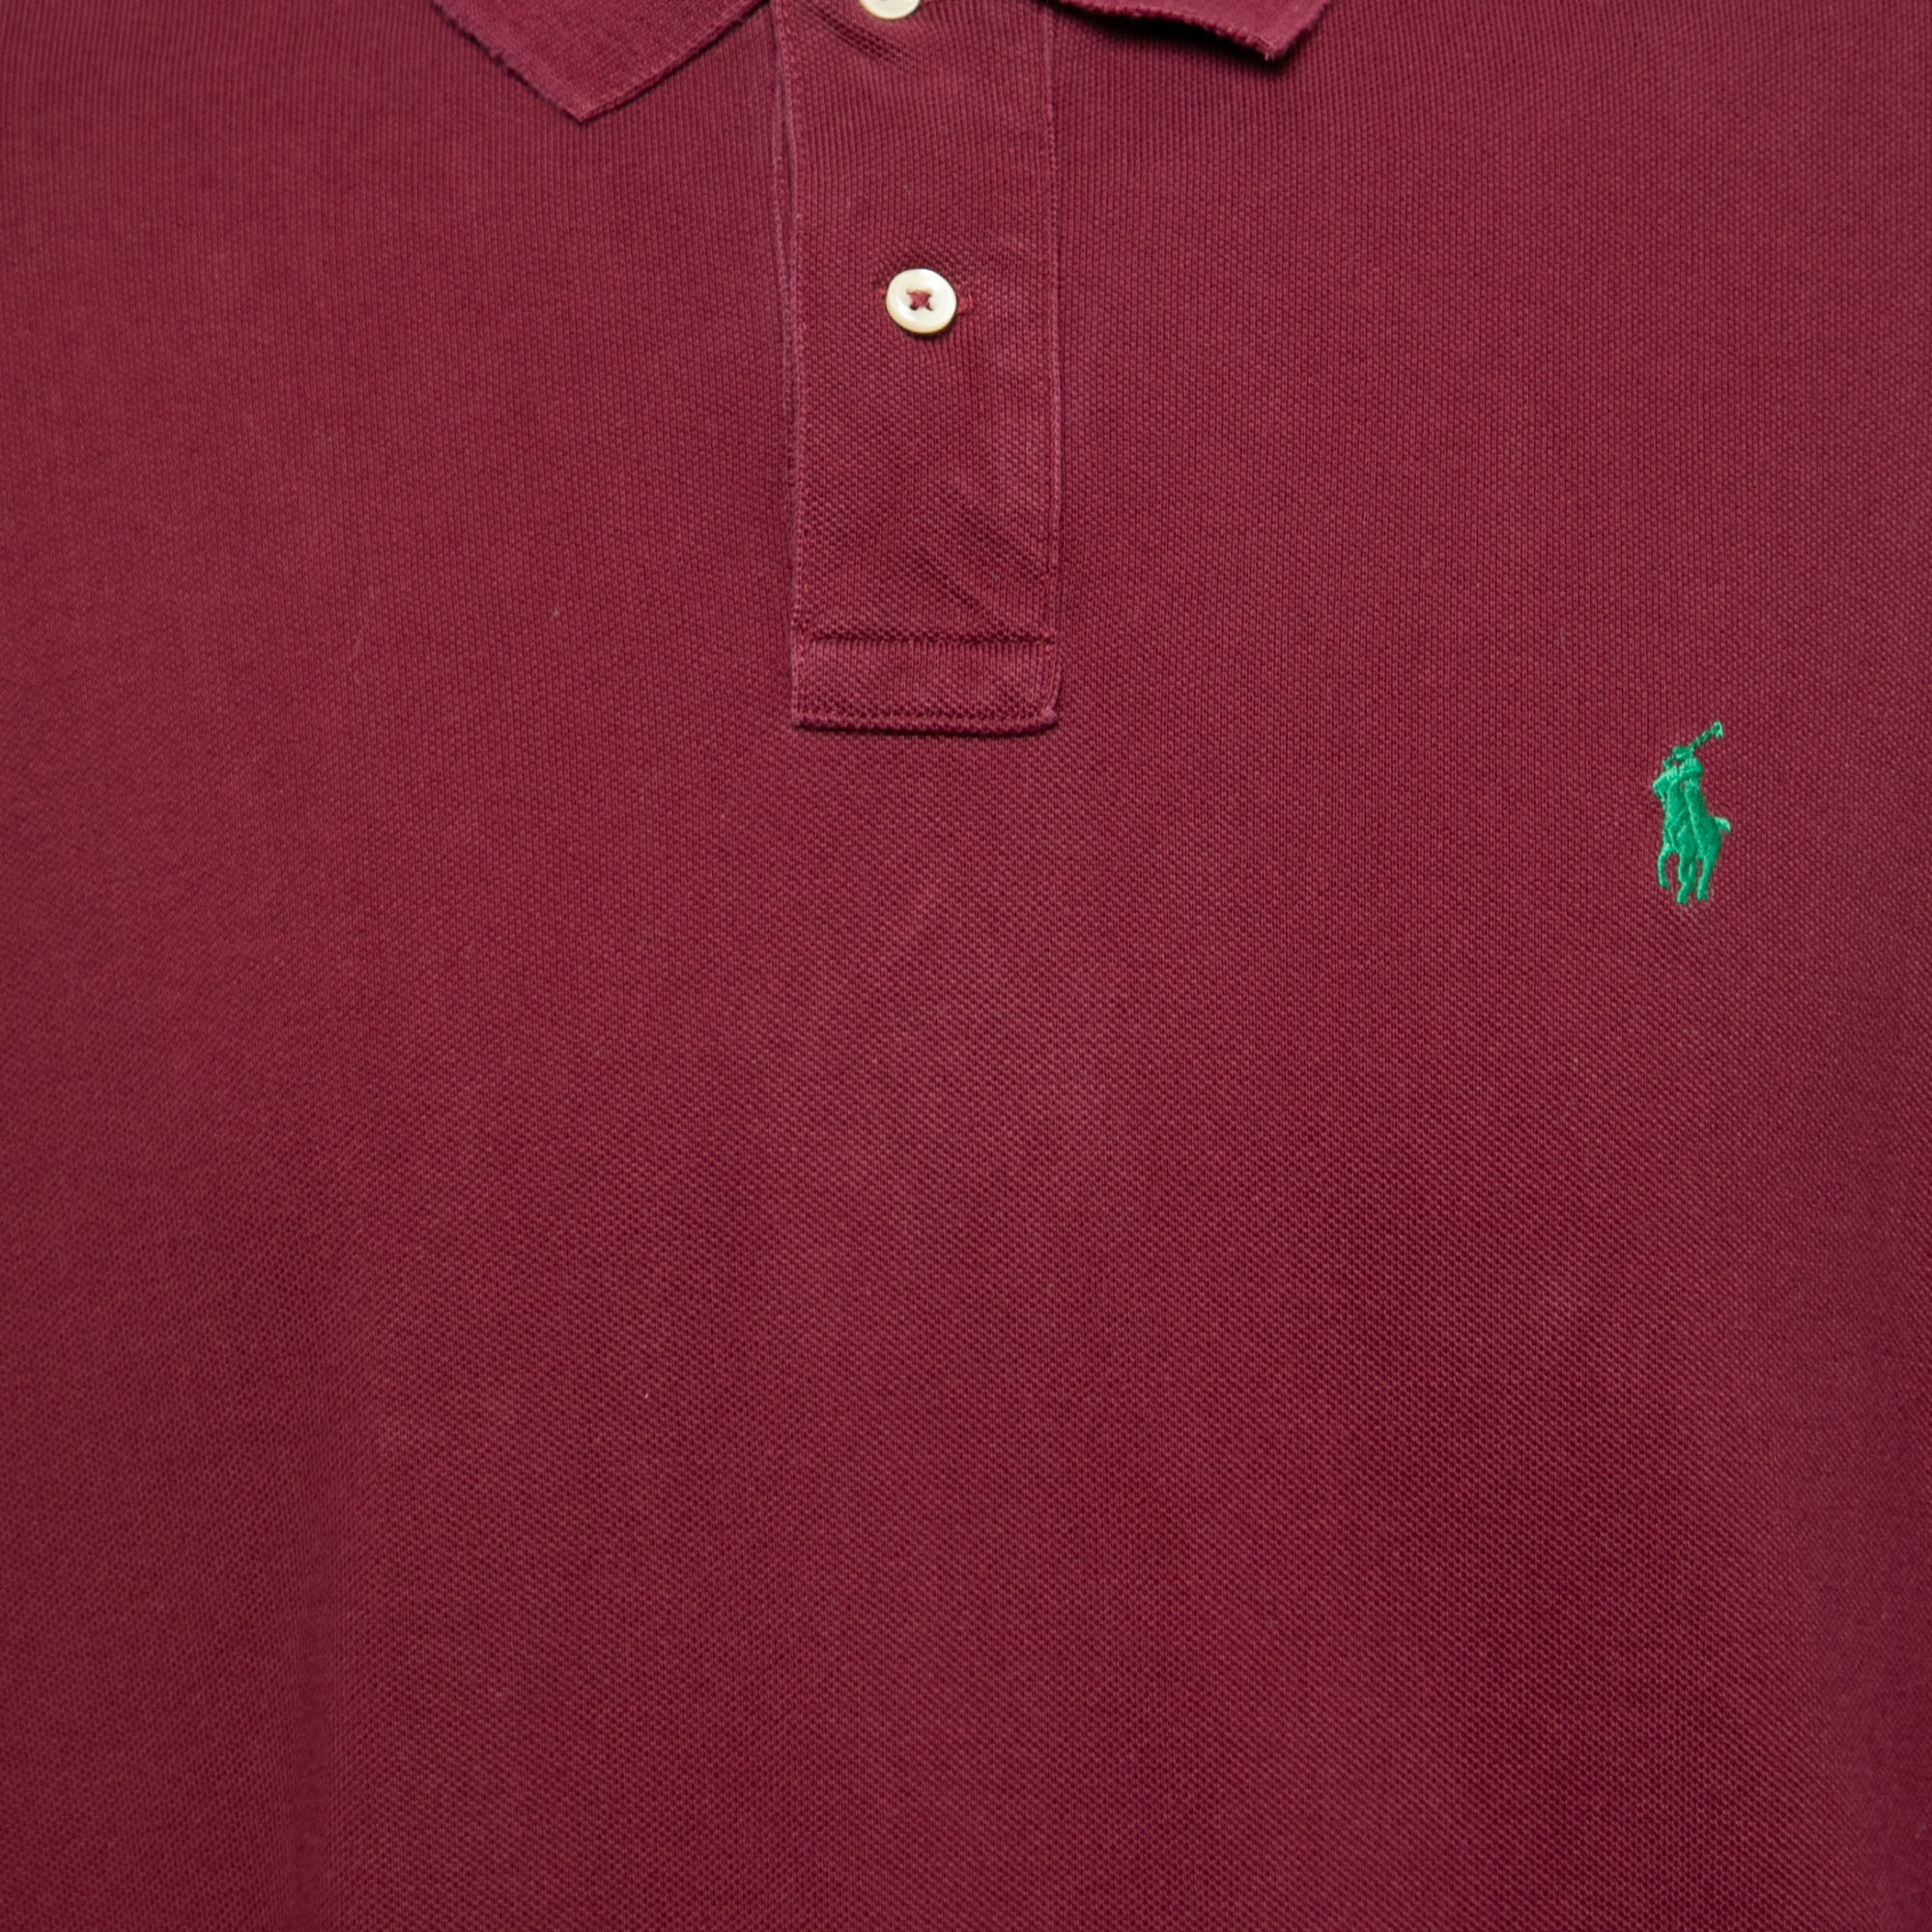 Polo Ralph Lauren Burgundy Cotton Pique Classic Fit Polo T-Shirt XXL